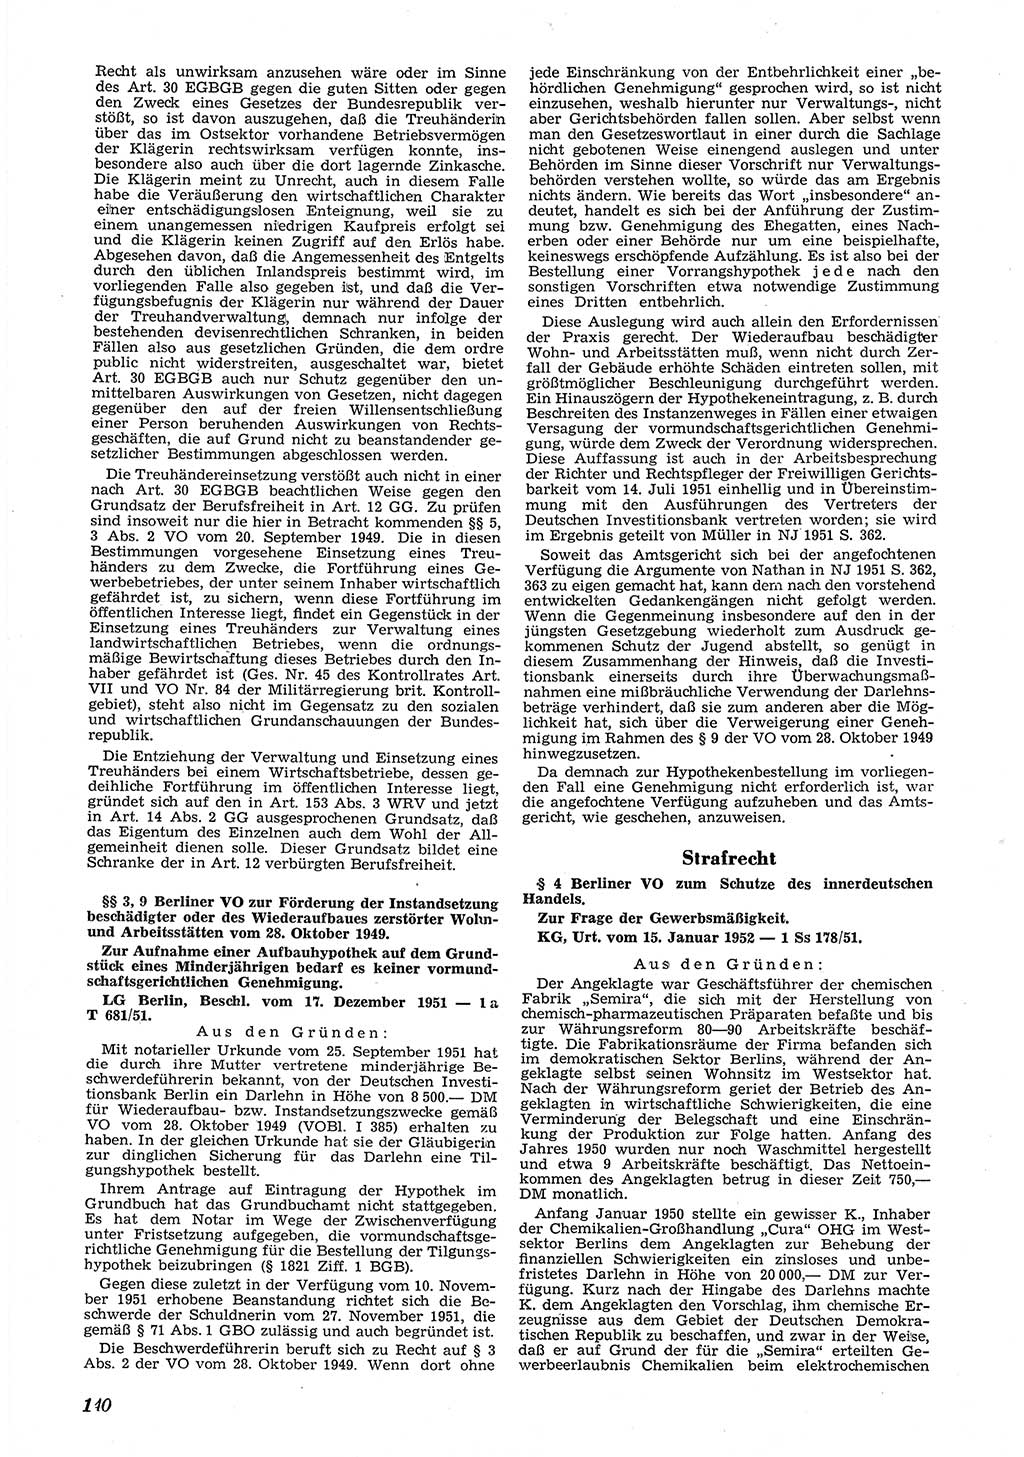 Neue Justiz (NJ), Zeitschrift für Recht und Rechtswissenschaft [Deutsche Demokratische Republik (DDR)], 6. Jahrgang 1952, Seite 140 (NJ DDR 1952, S. 140)